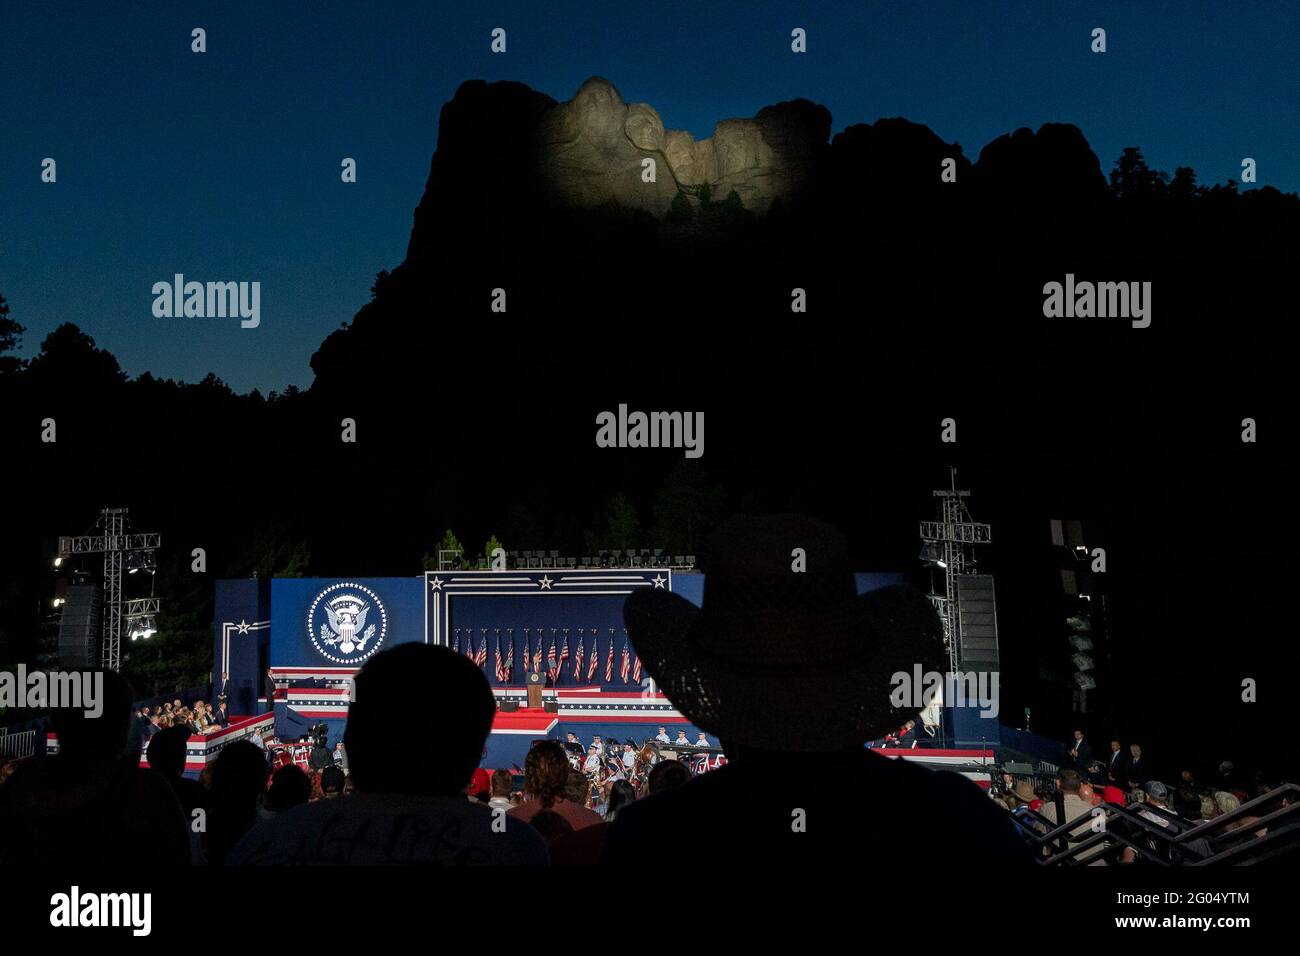 Reportage: Il presidente Donald Trump visita Mount Rushmore per celebrare l'America con fuochi d'artificio al monumento. Data: 3 luglio 2020 Foto Stock